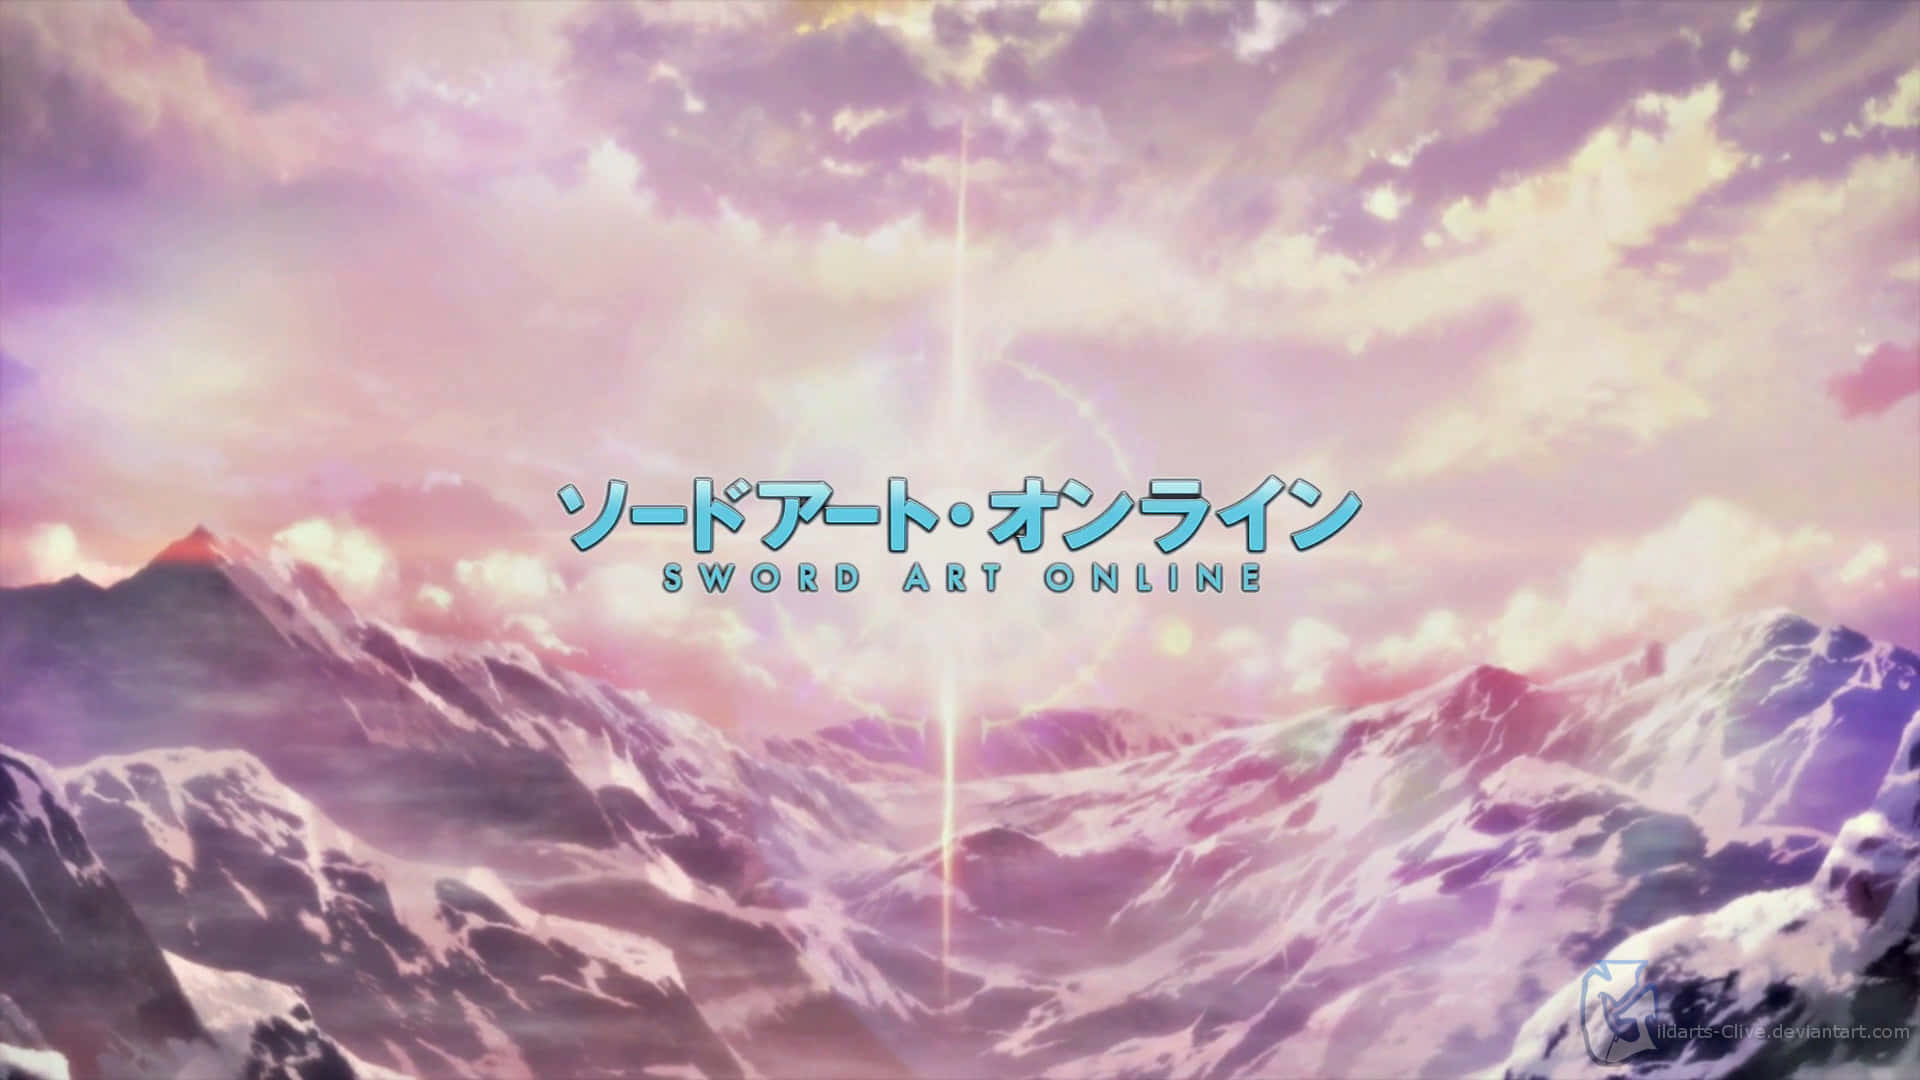 Subtle Anime Sword Art Online Opening Scene Wallpaper